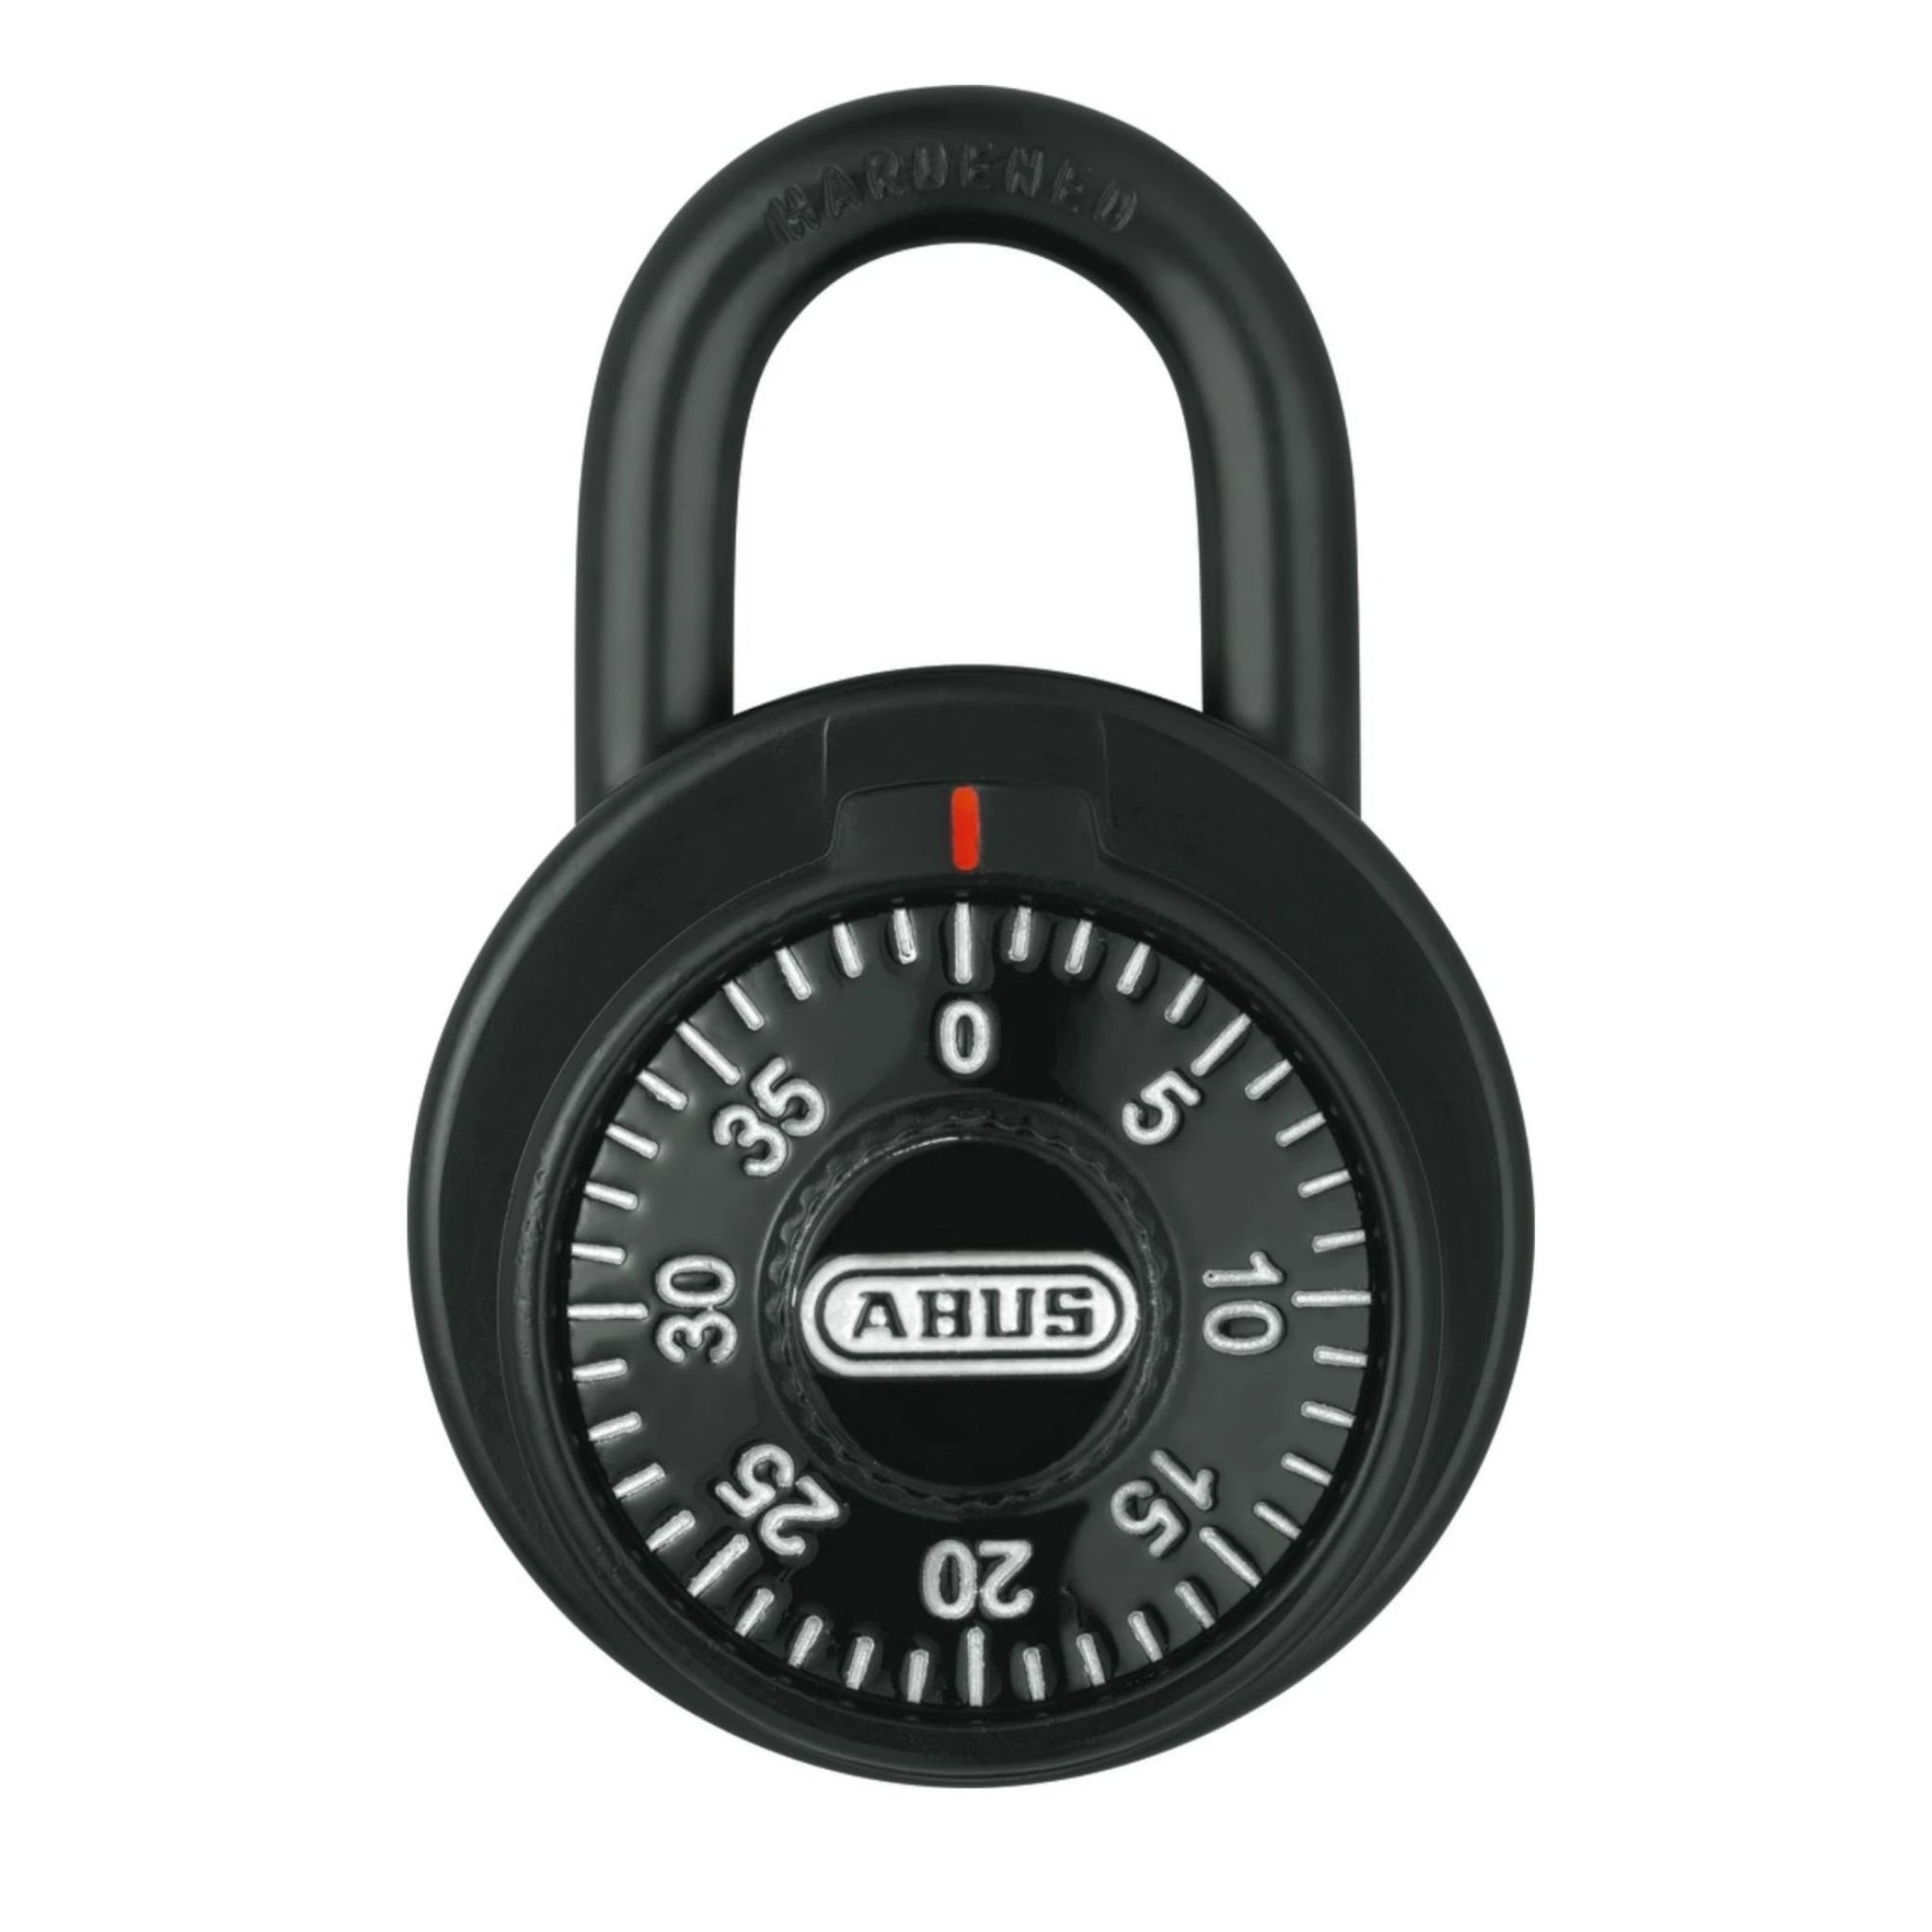 Abus 78/50 KC KA 508A Black Locker Padlock with Key Control Matched to Key Number KA508A - The Lock Source